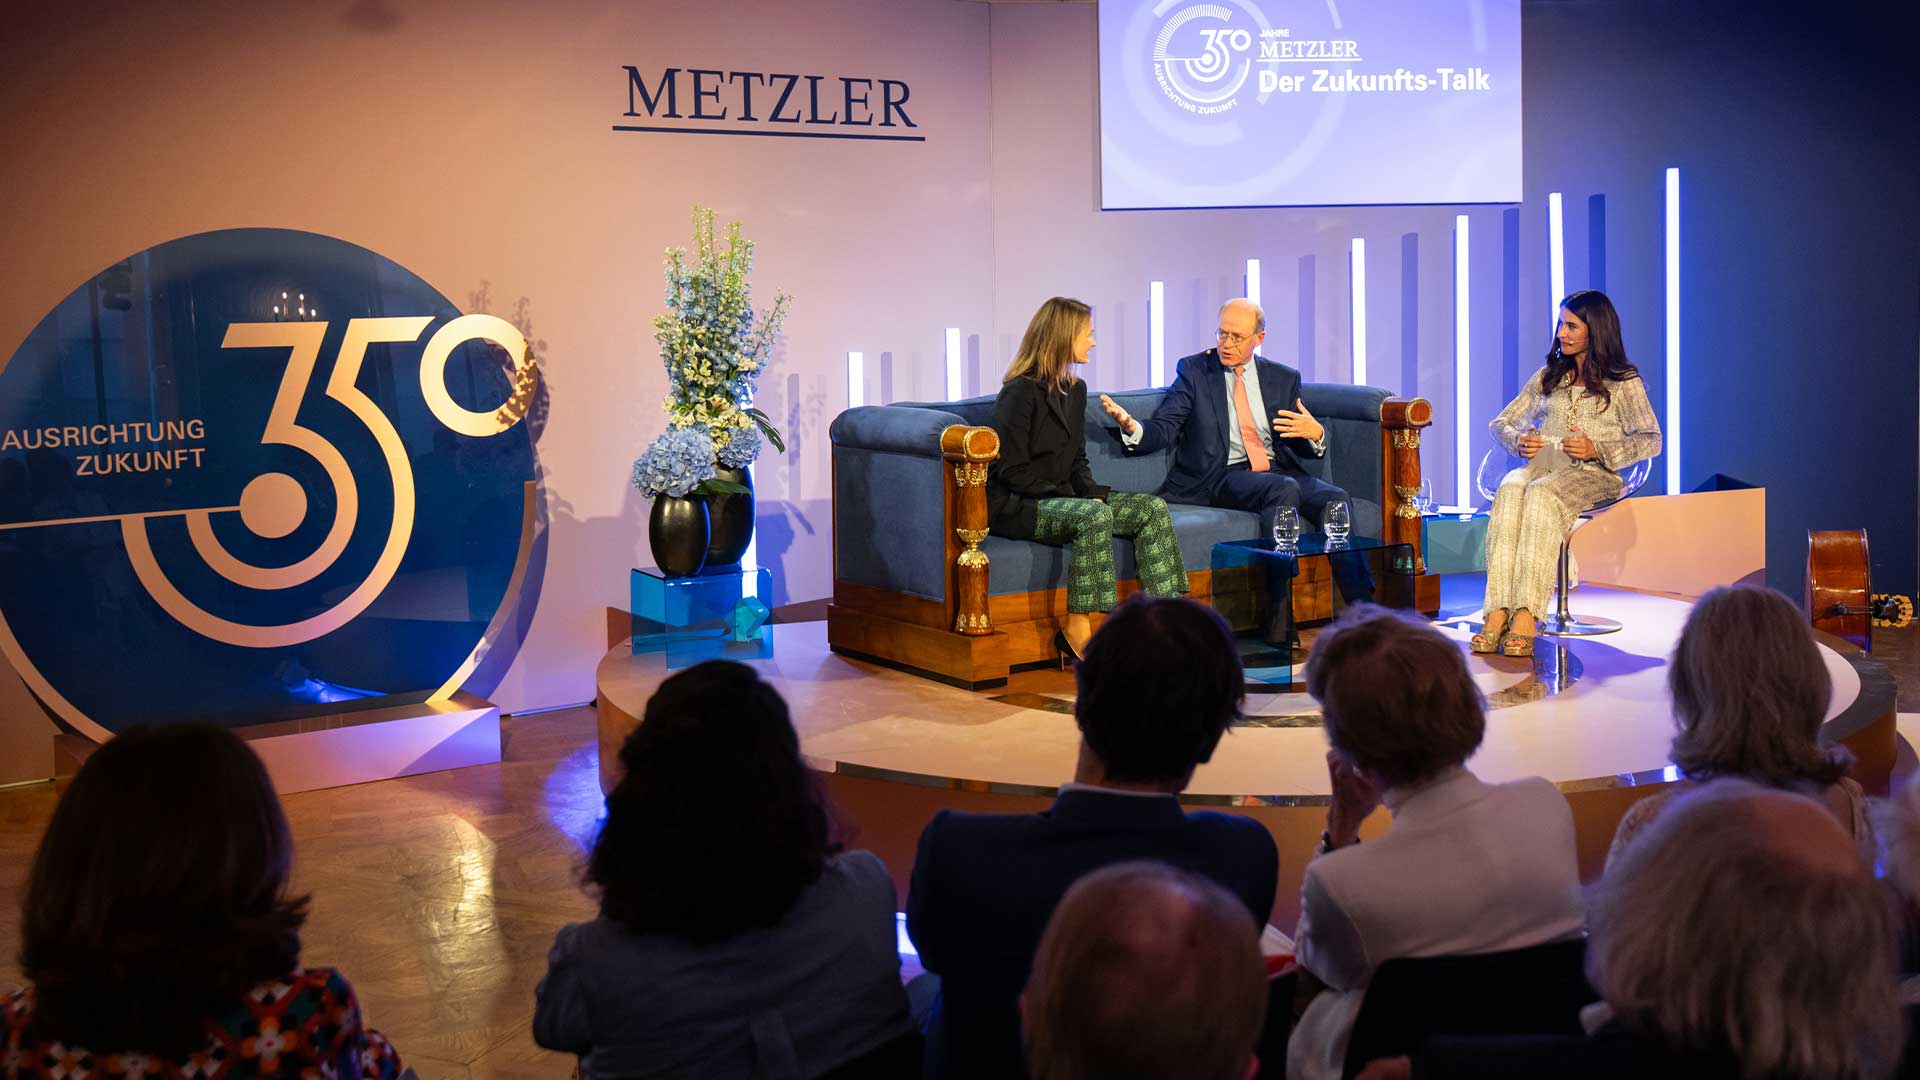 Metzler Zukunfts-Talk in München